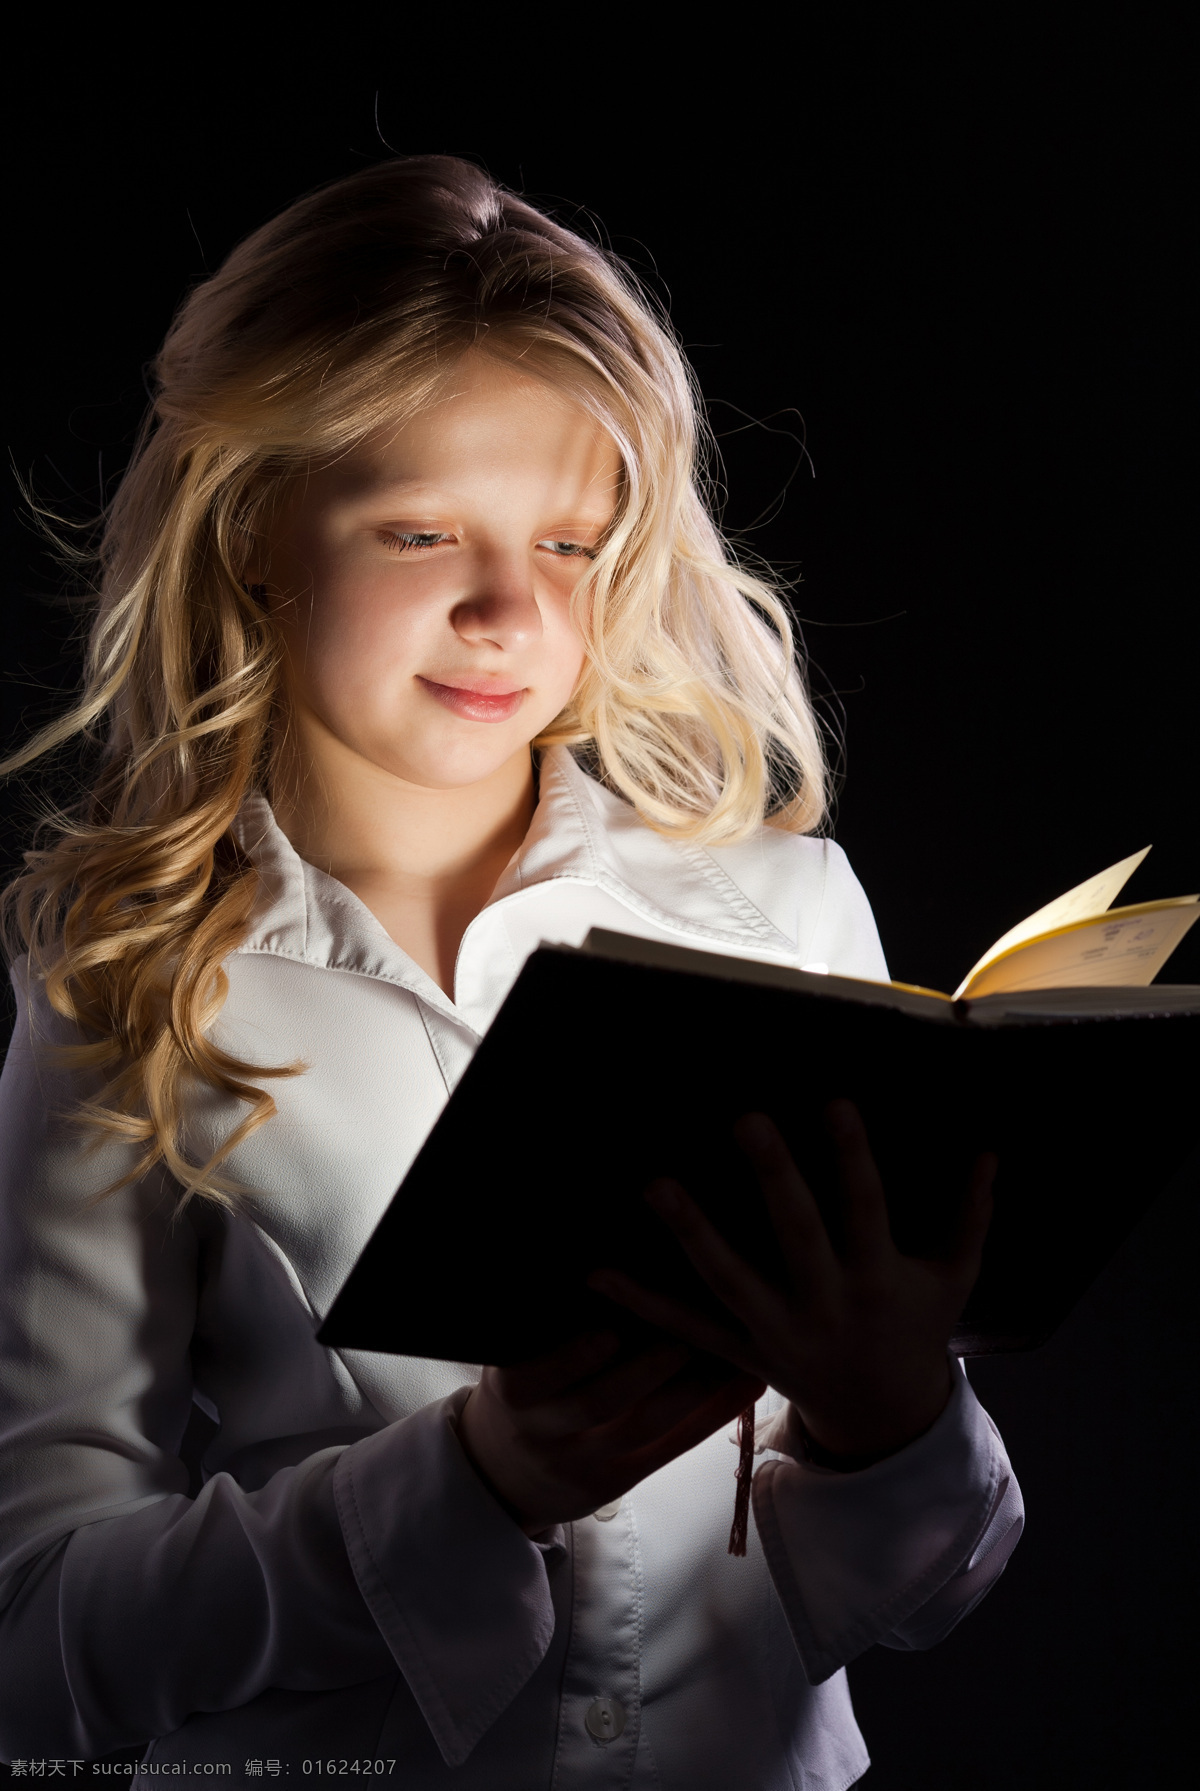 看书 小女孩 看书的小女孩 可爱 儿童 认真 学习 儿童教育 美女图片 人物图片